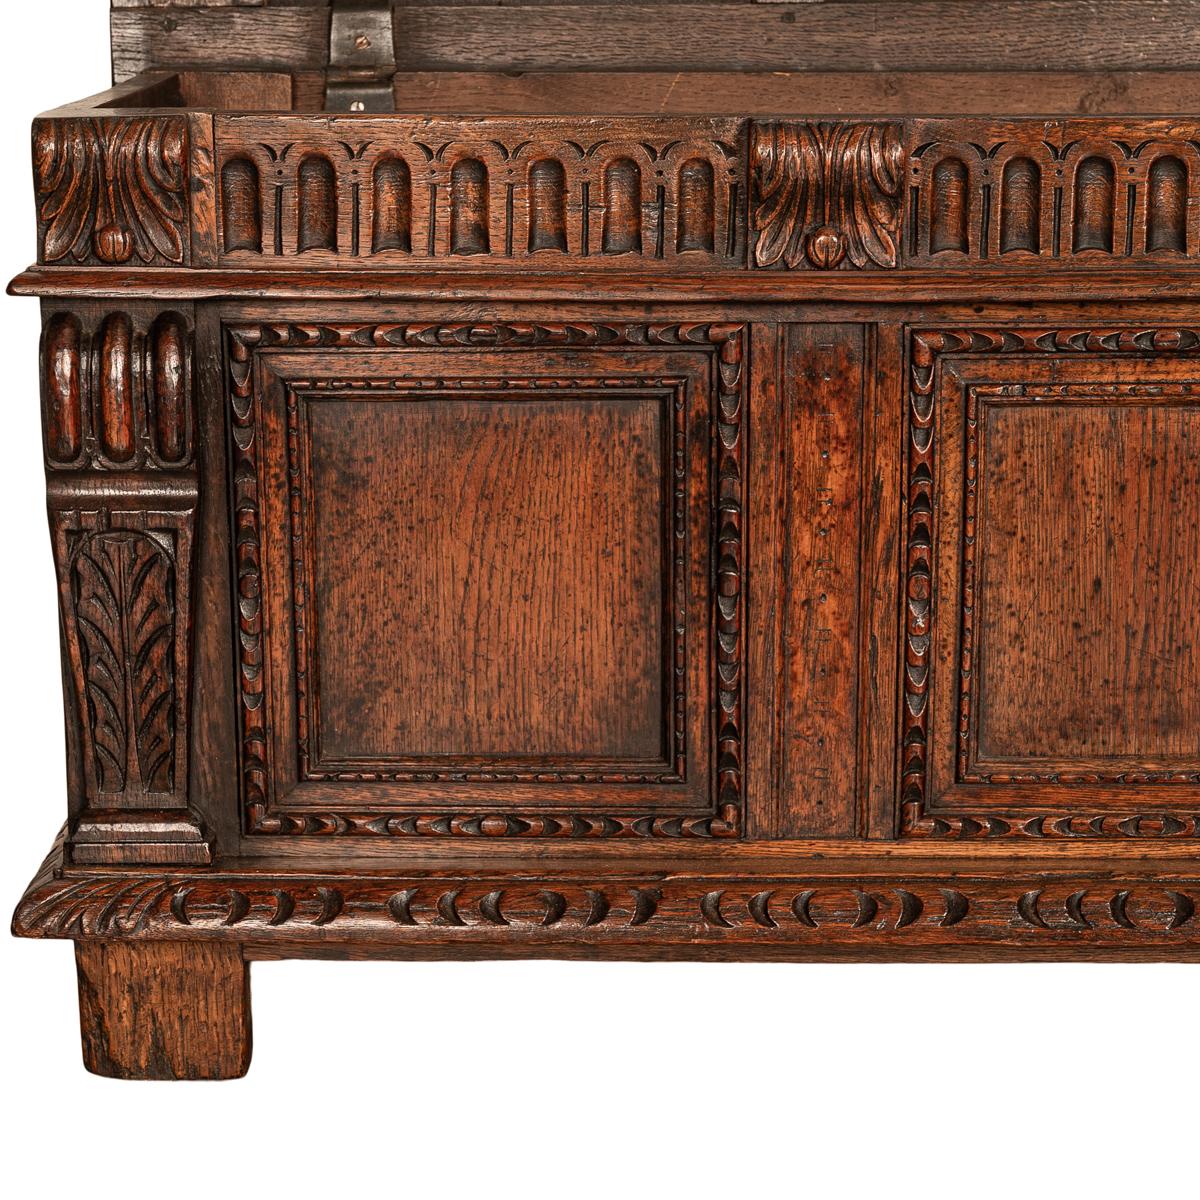 Antique Renaissance Revival Carved Oak Coffer Chest Trunk Window Bench Seat 1880 8